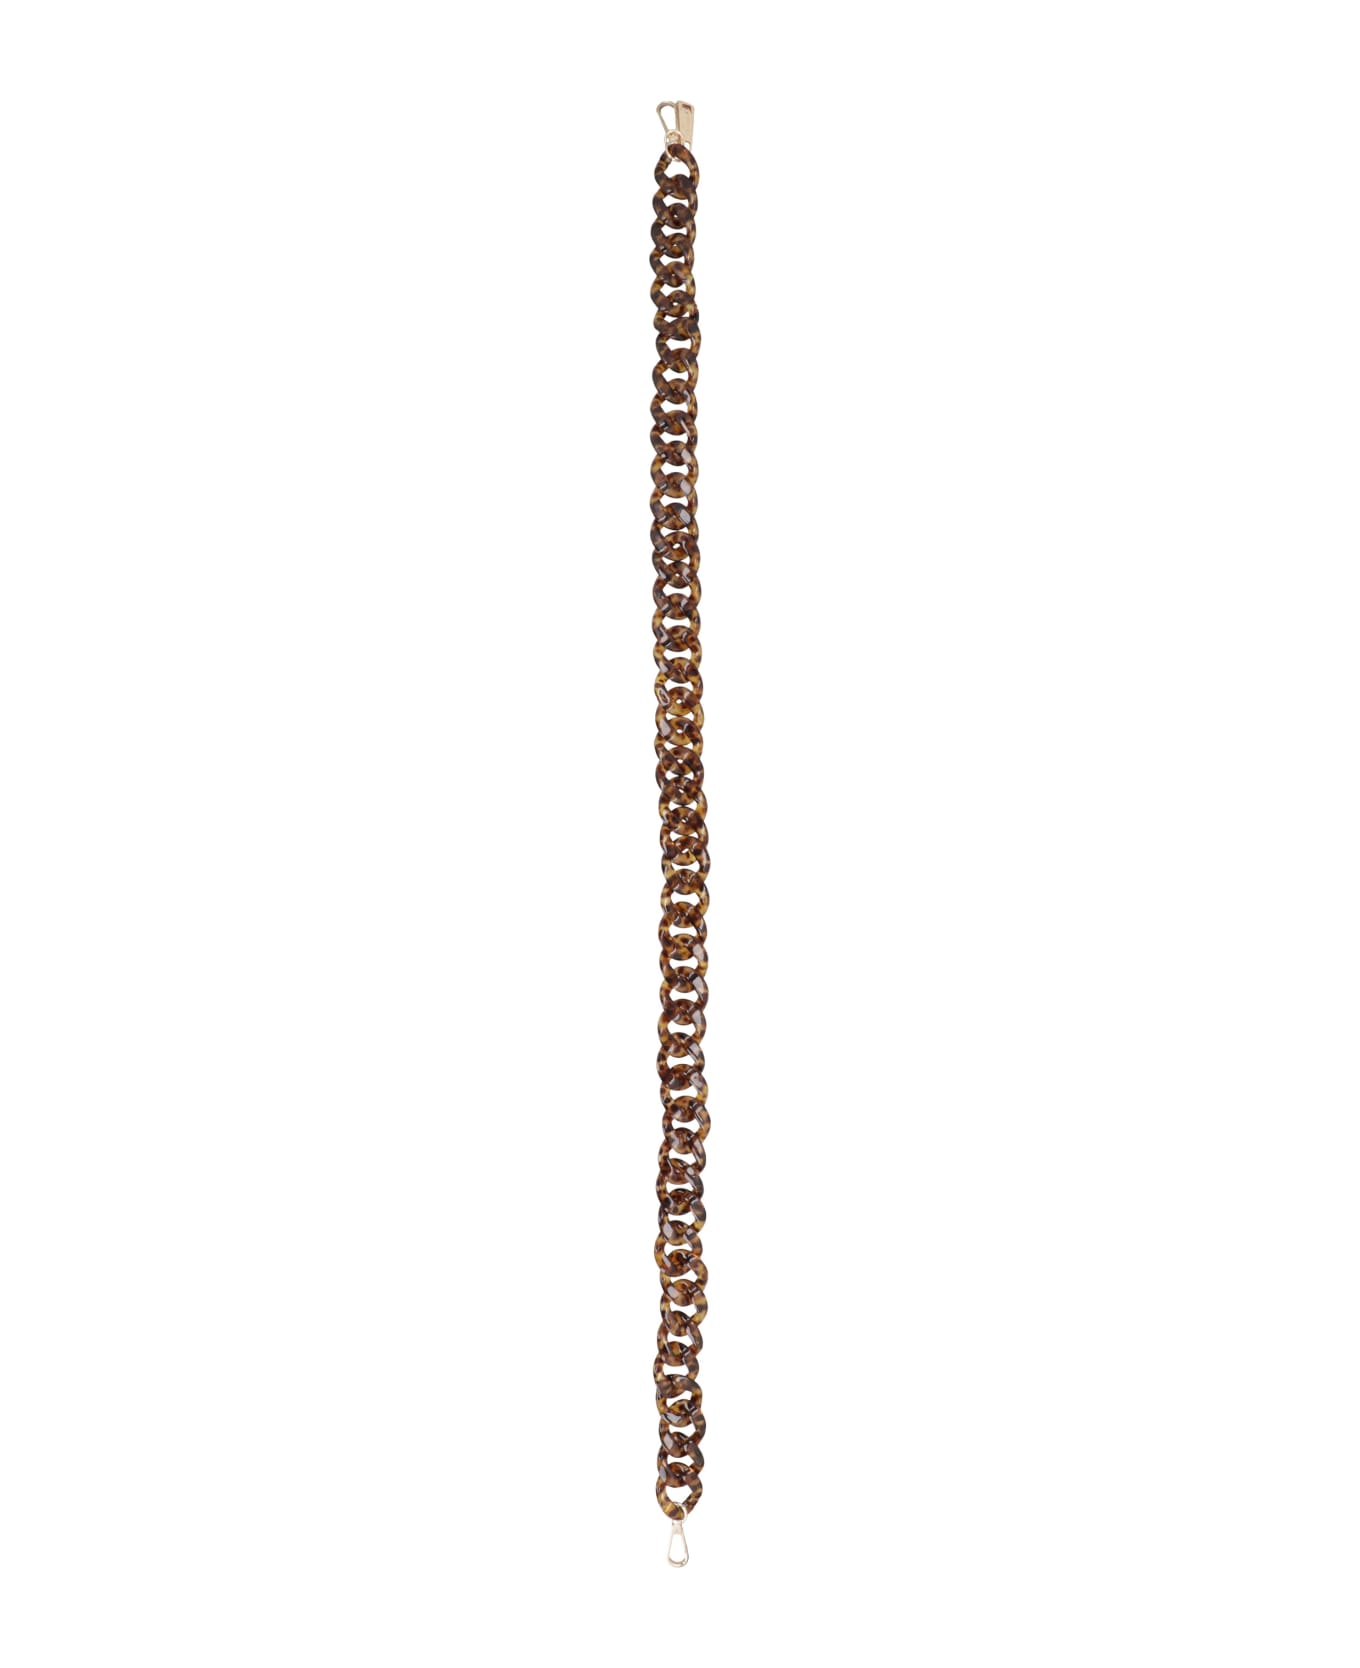 LaMilanesa Tortoiseshell Chain Shoulder Strap - brown